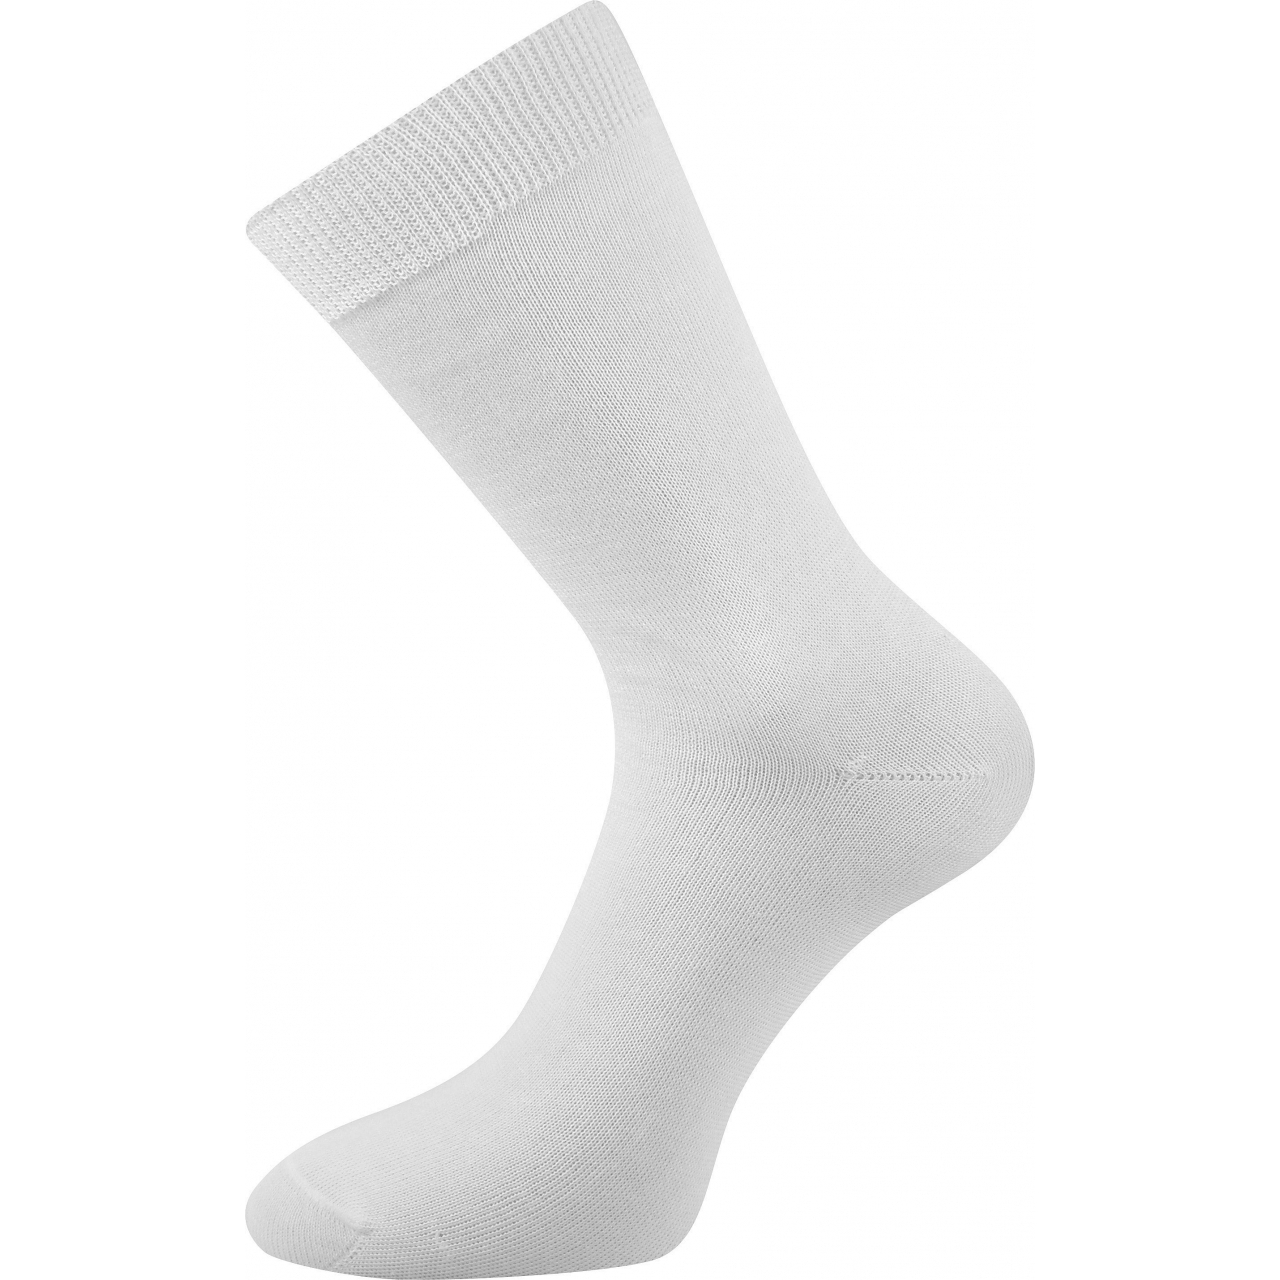 Ponožky dámské Lonka Fany - bílé, 35-37